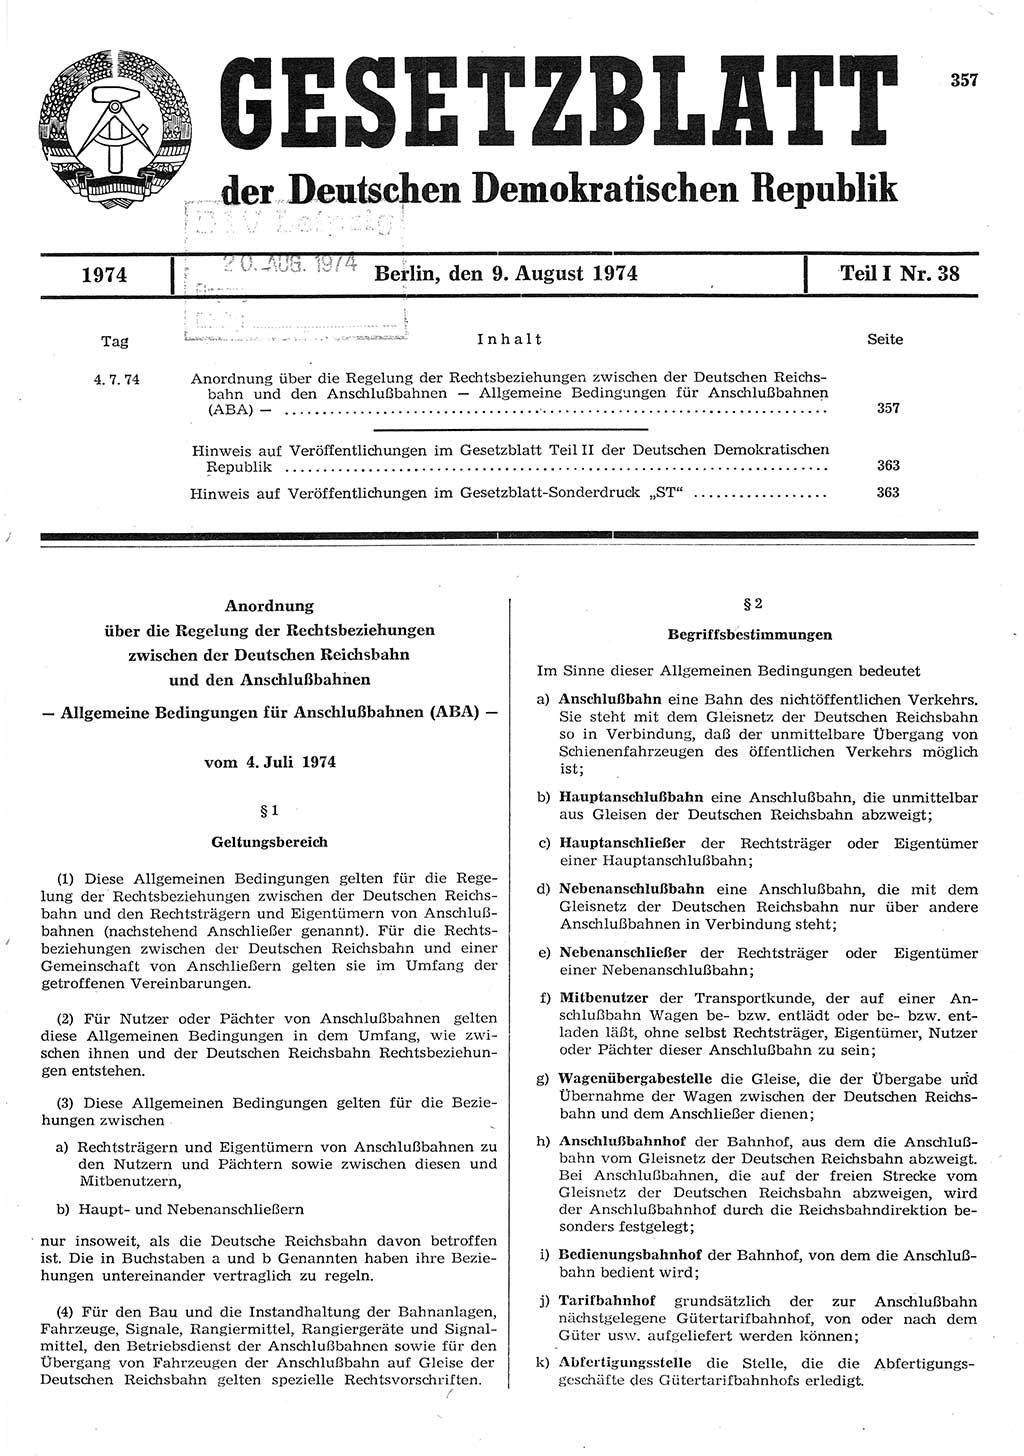 Gesetzblatt (GBl.) der Deutschen Demokratischen Republik (DDR) Teil Ⅰ 1974, Seite 357 (GBl. DDR Ⅰ 1974, S. 357)